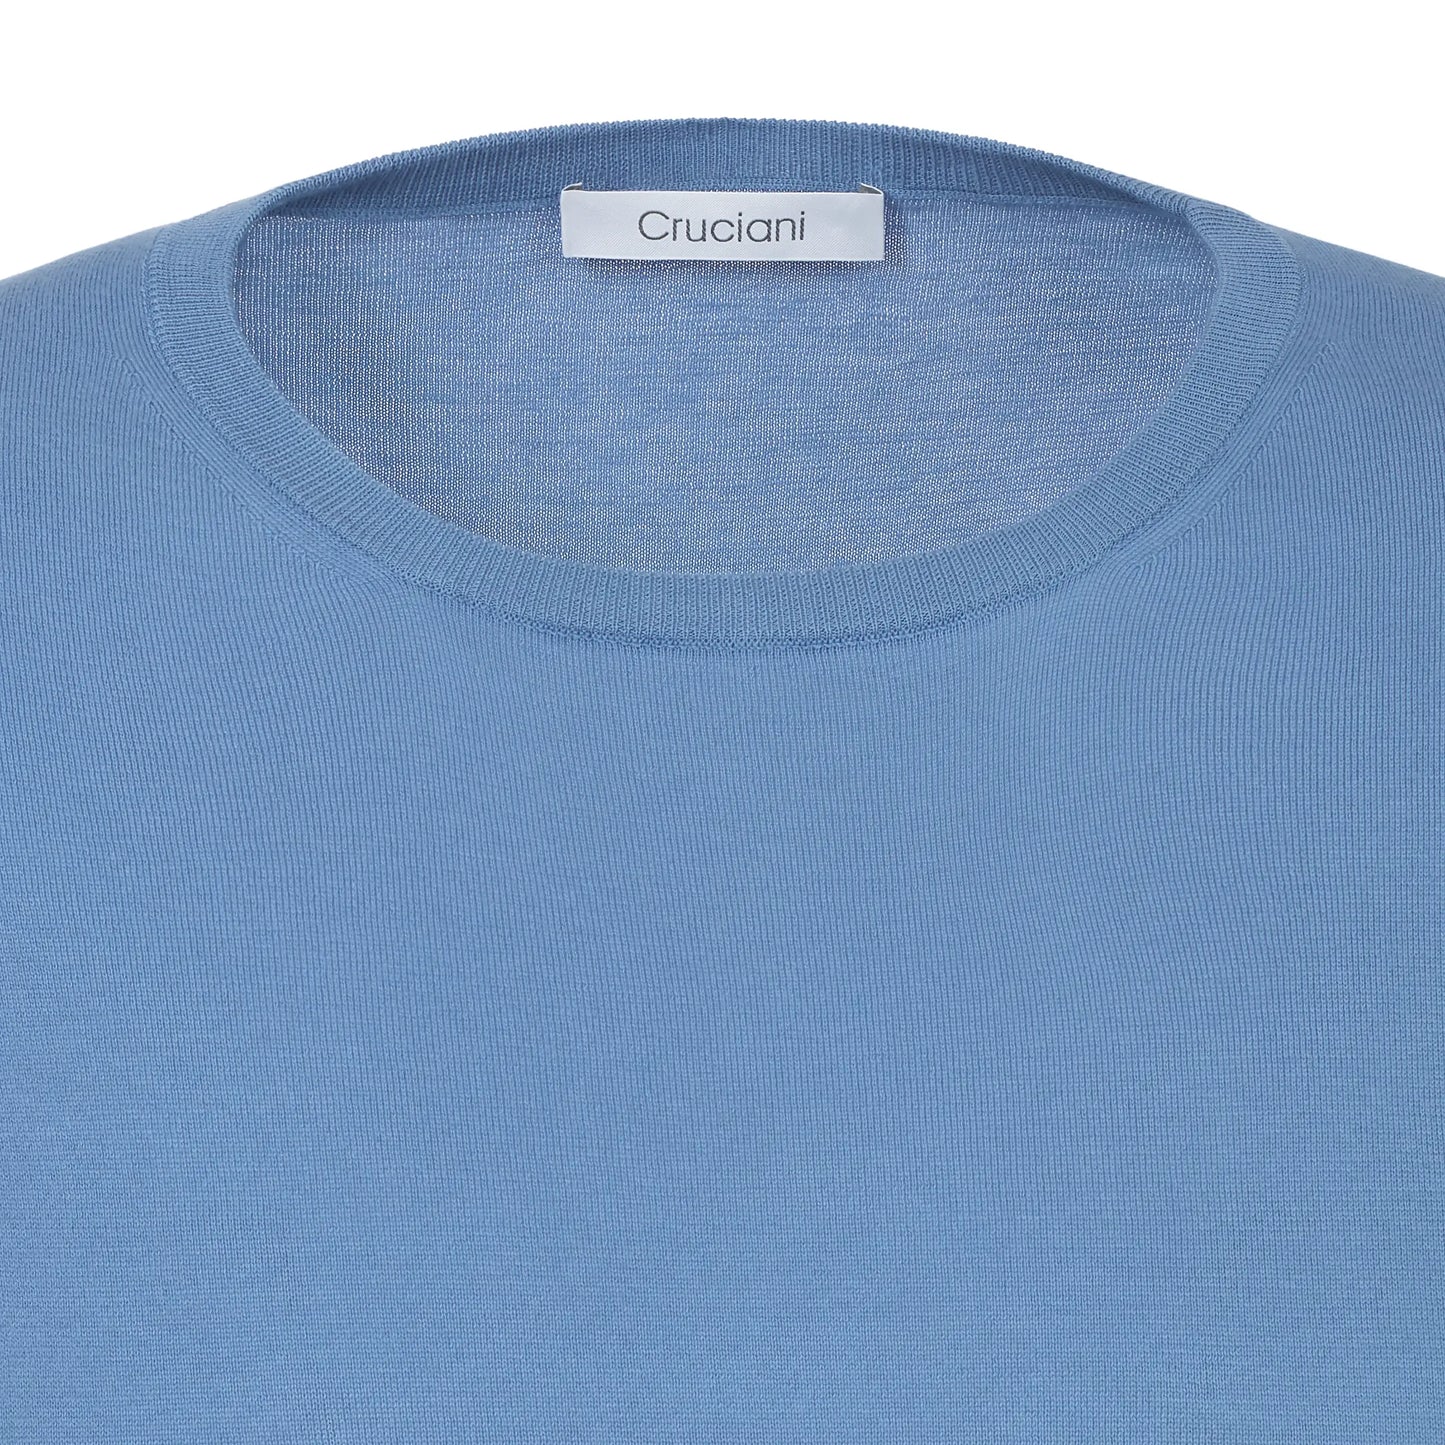 Cotton Sky Blue T-Shirt Sweater